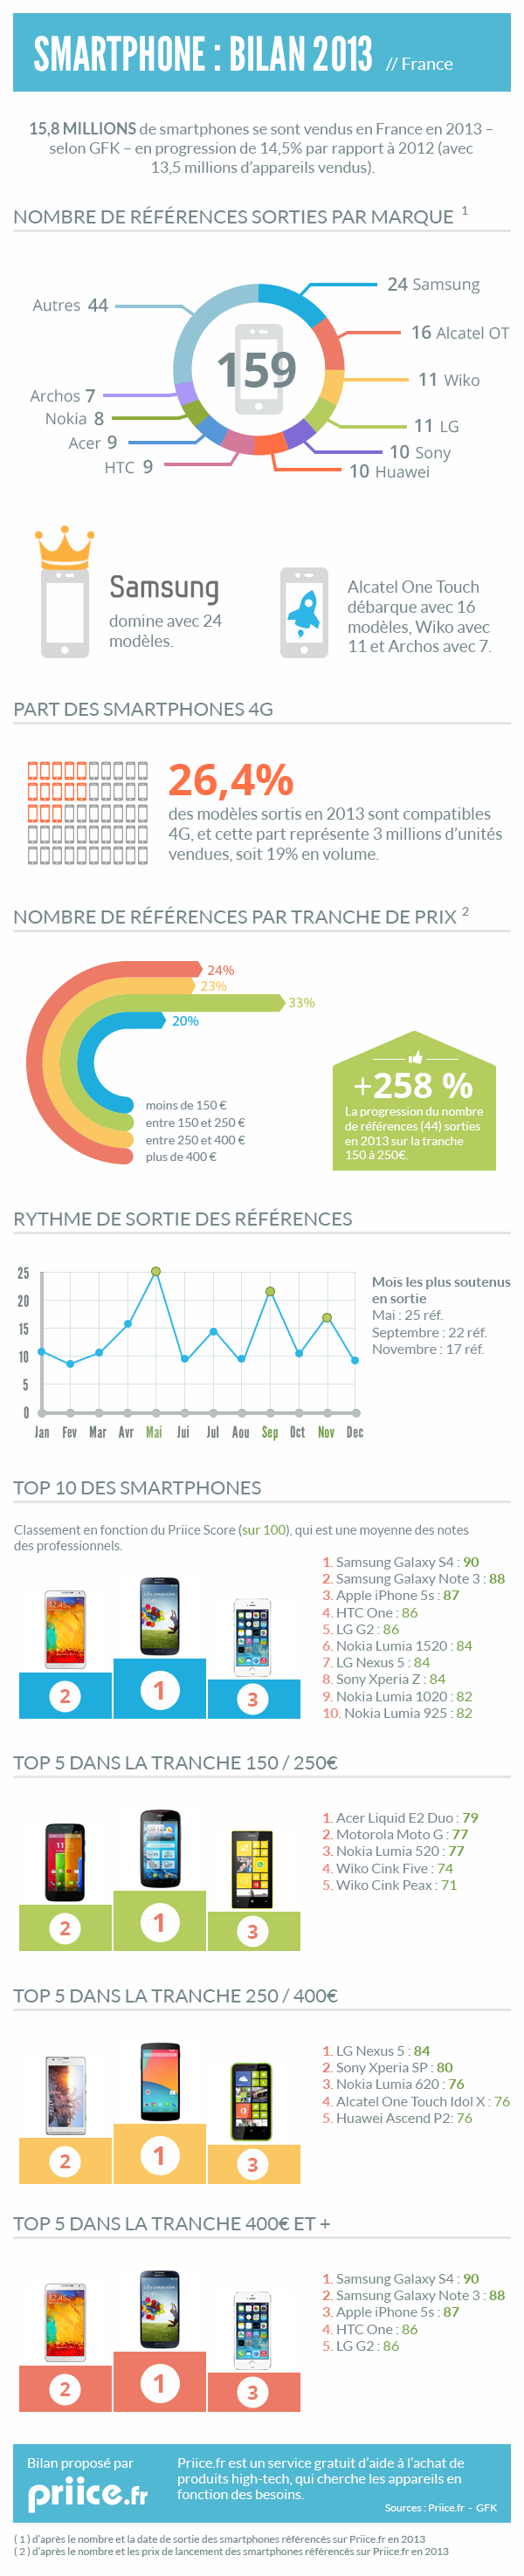 Infographie bilan des smartphones en France en 2013